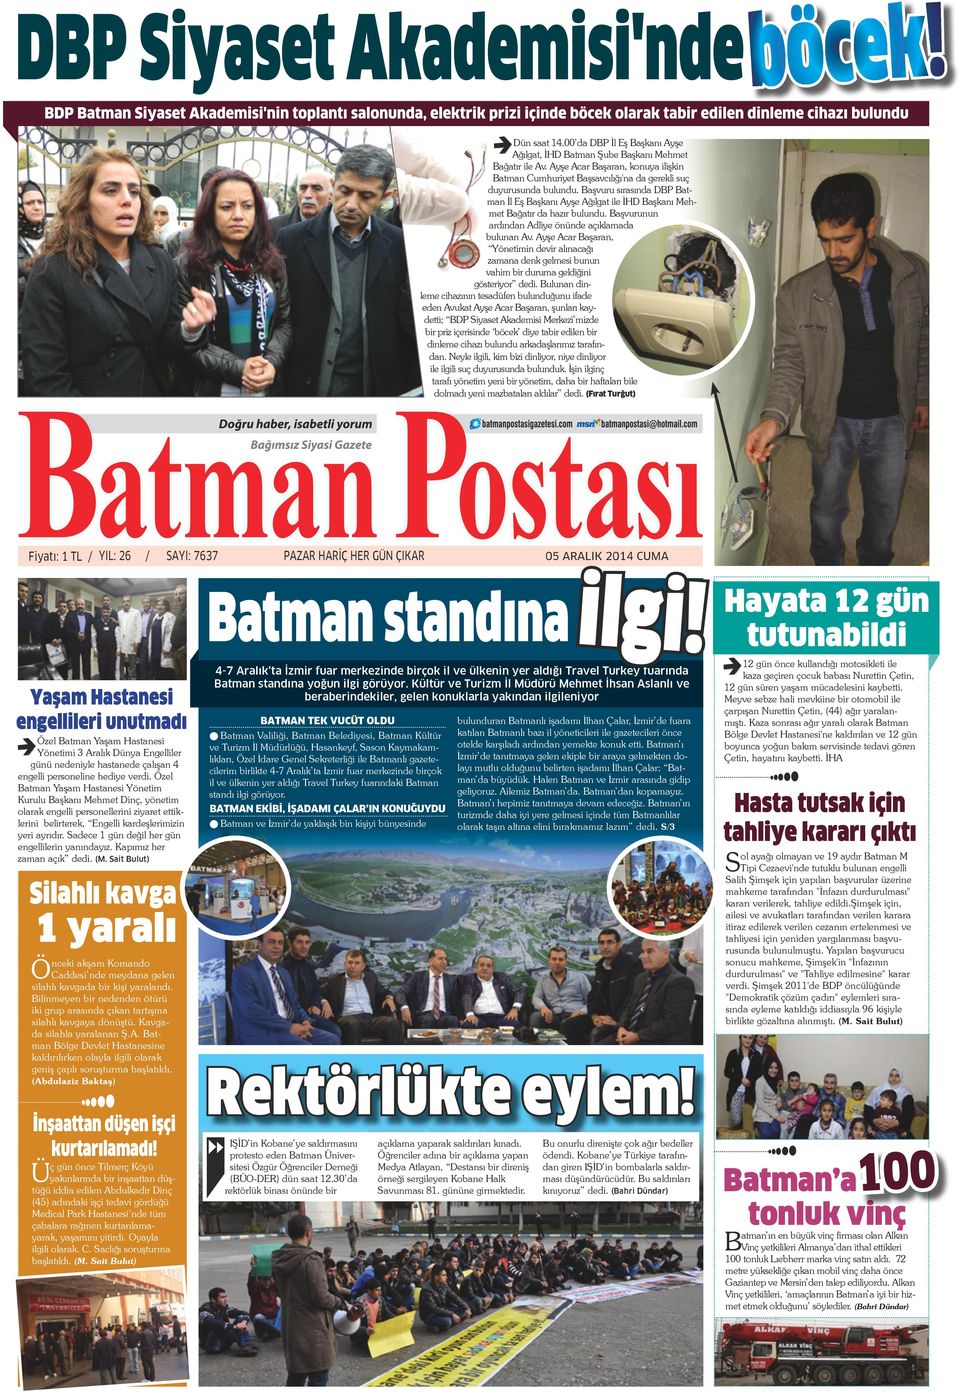 Başvuru sırasında DBP Batman İl Eş Başkanı Ayşe Ağılgat ile İHD Başkanı Mehmet Bağatır da hazır bulundu. Başvurunun ardından Adliye önünde açıklamada bulunan Av.